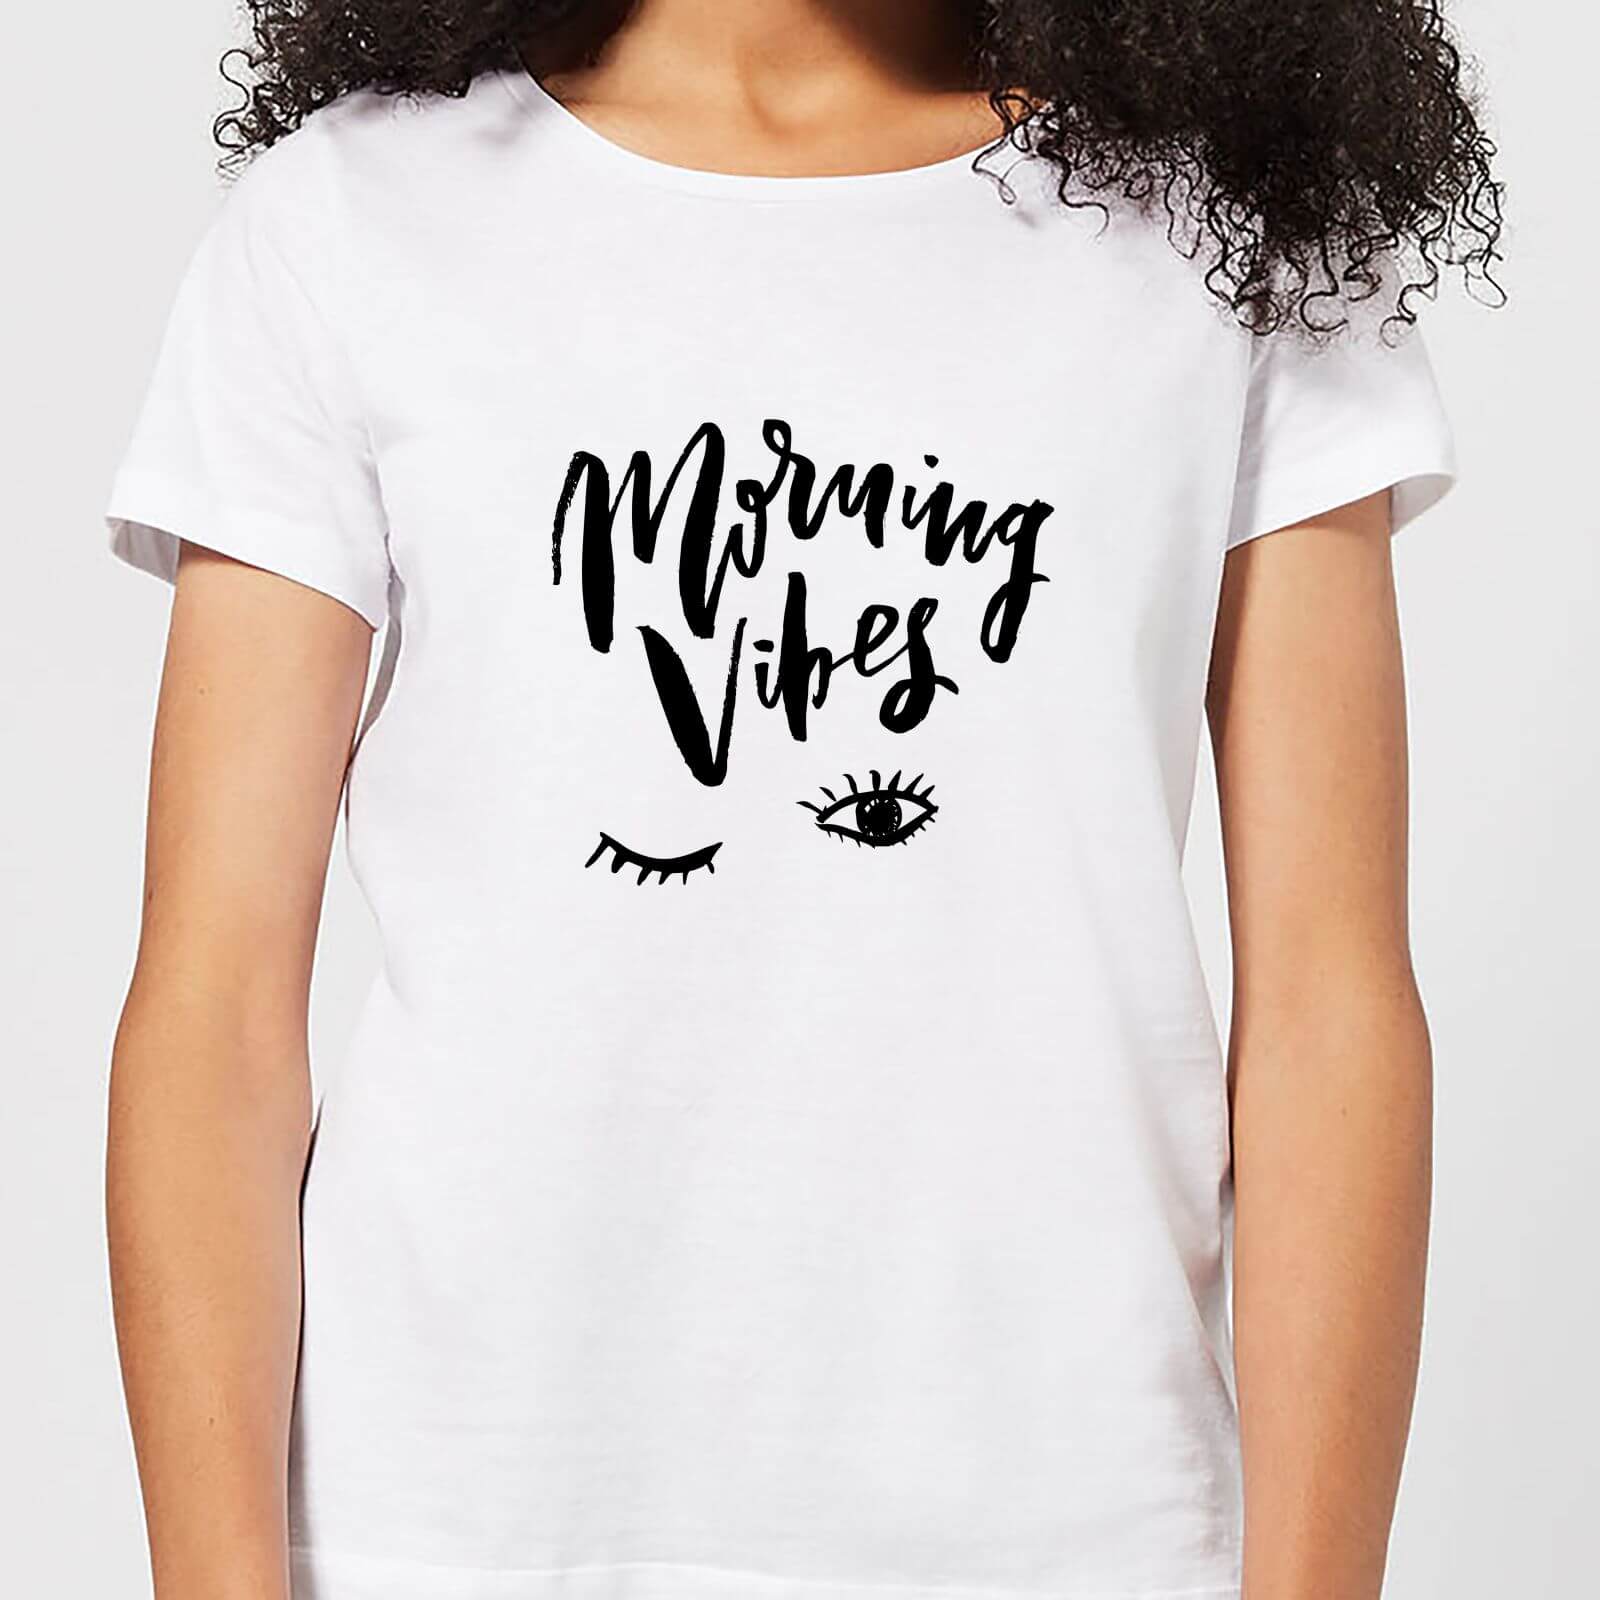 Morning Vibes Women's T-Shirt - White - S - White